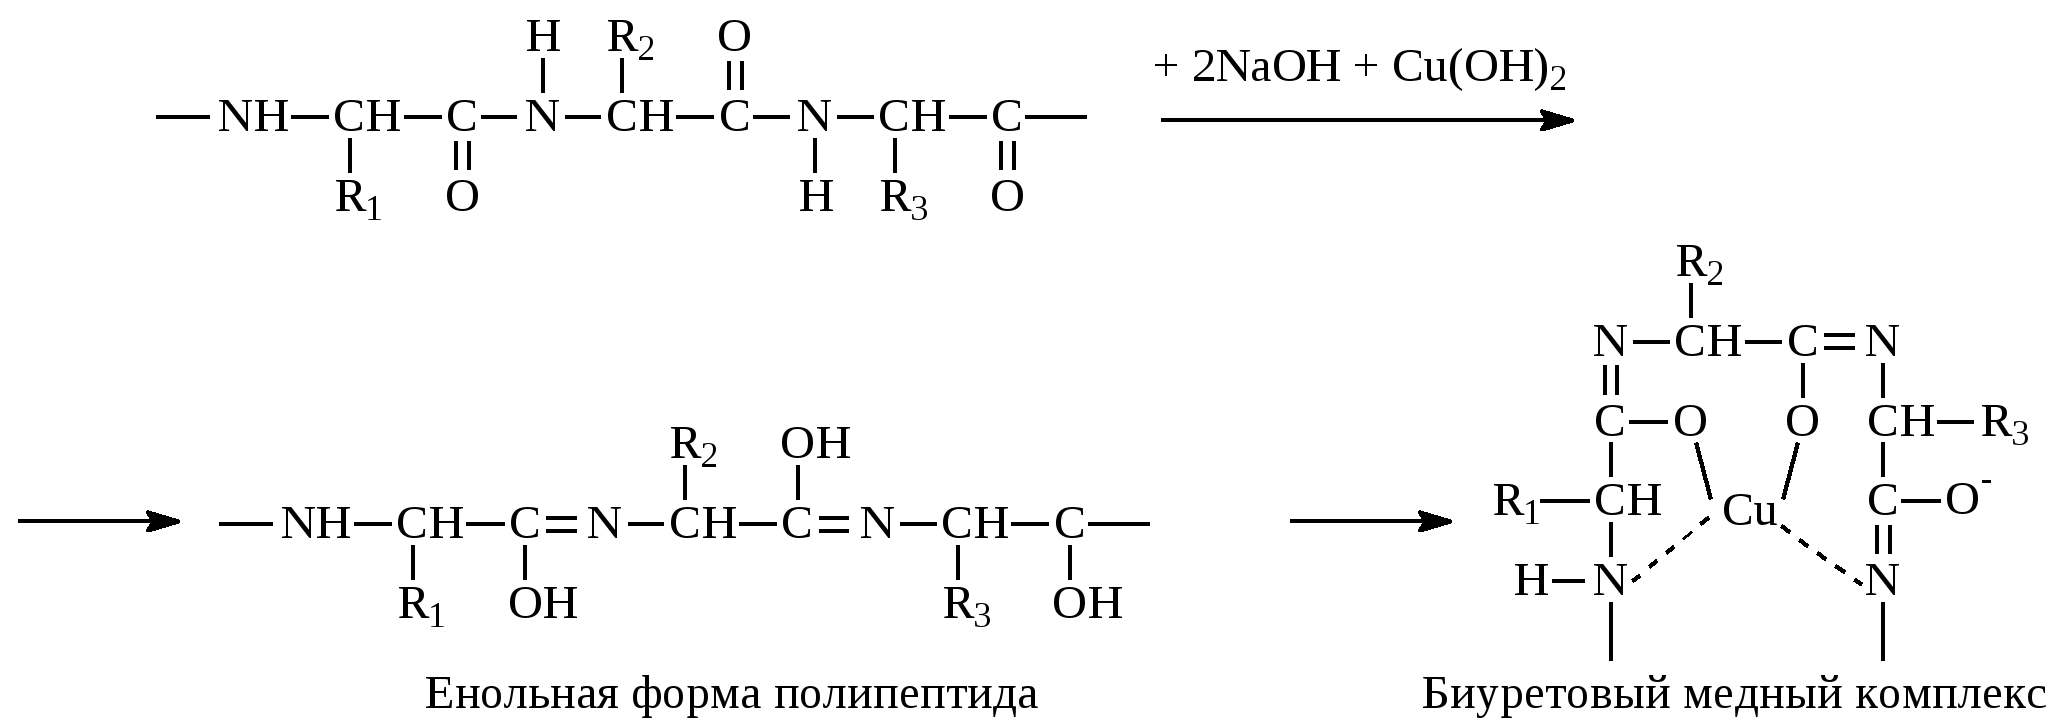 Форма молекулы полипептида. Формы полипептидов. Енольная форма. Реакция глицина с формальдегидом. Глицин и формальдегид.